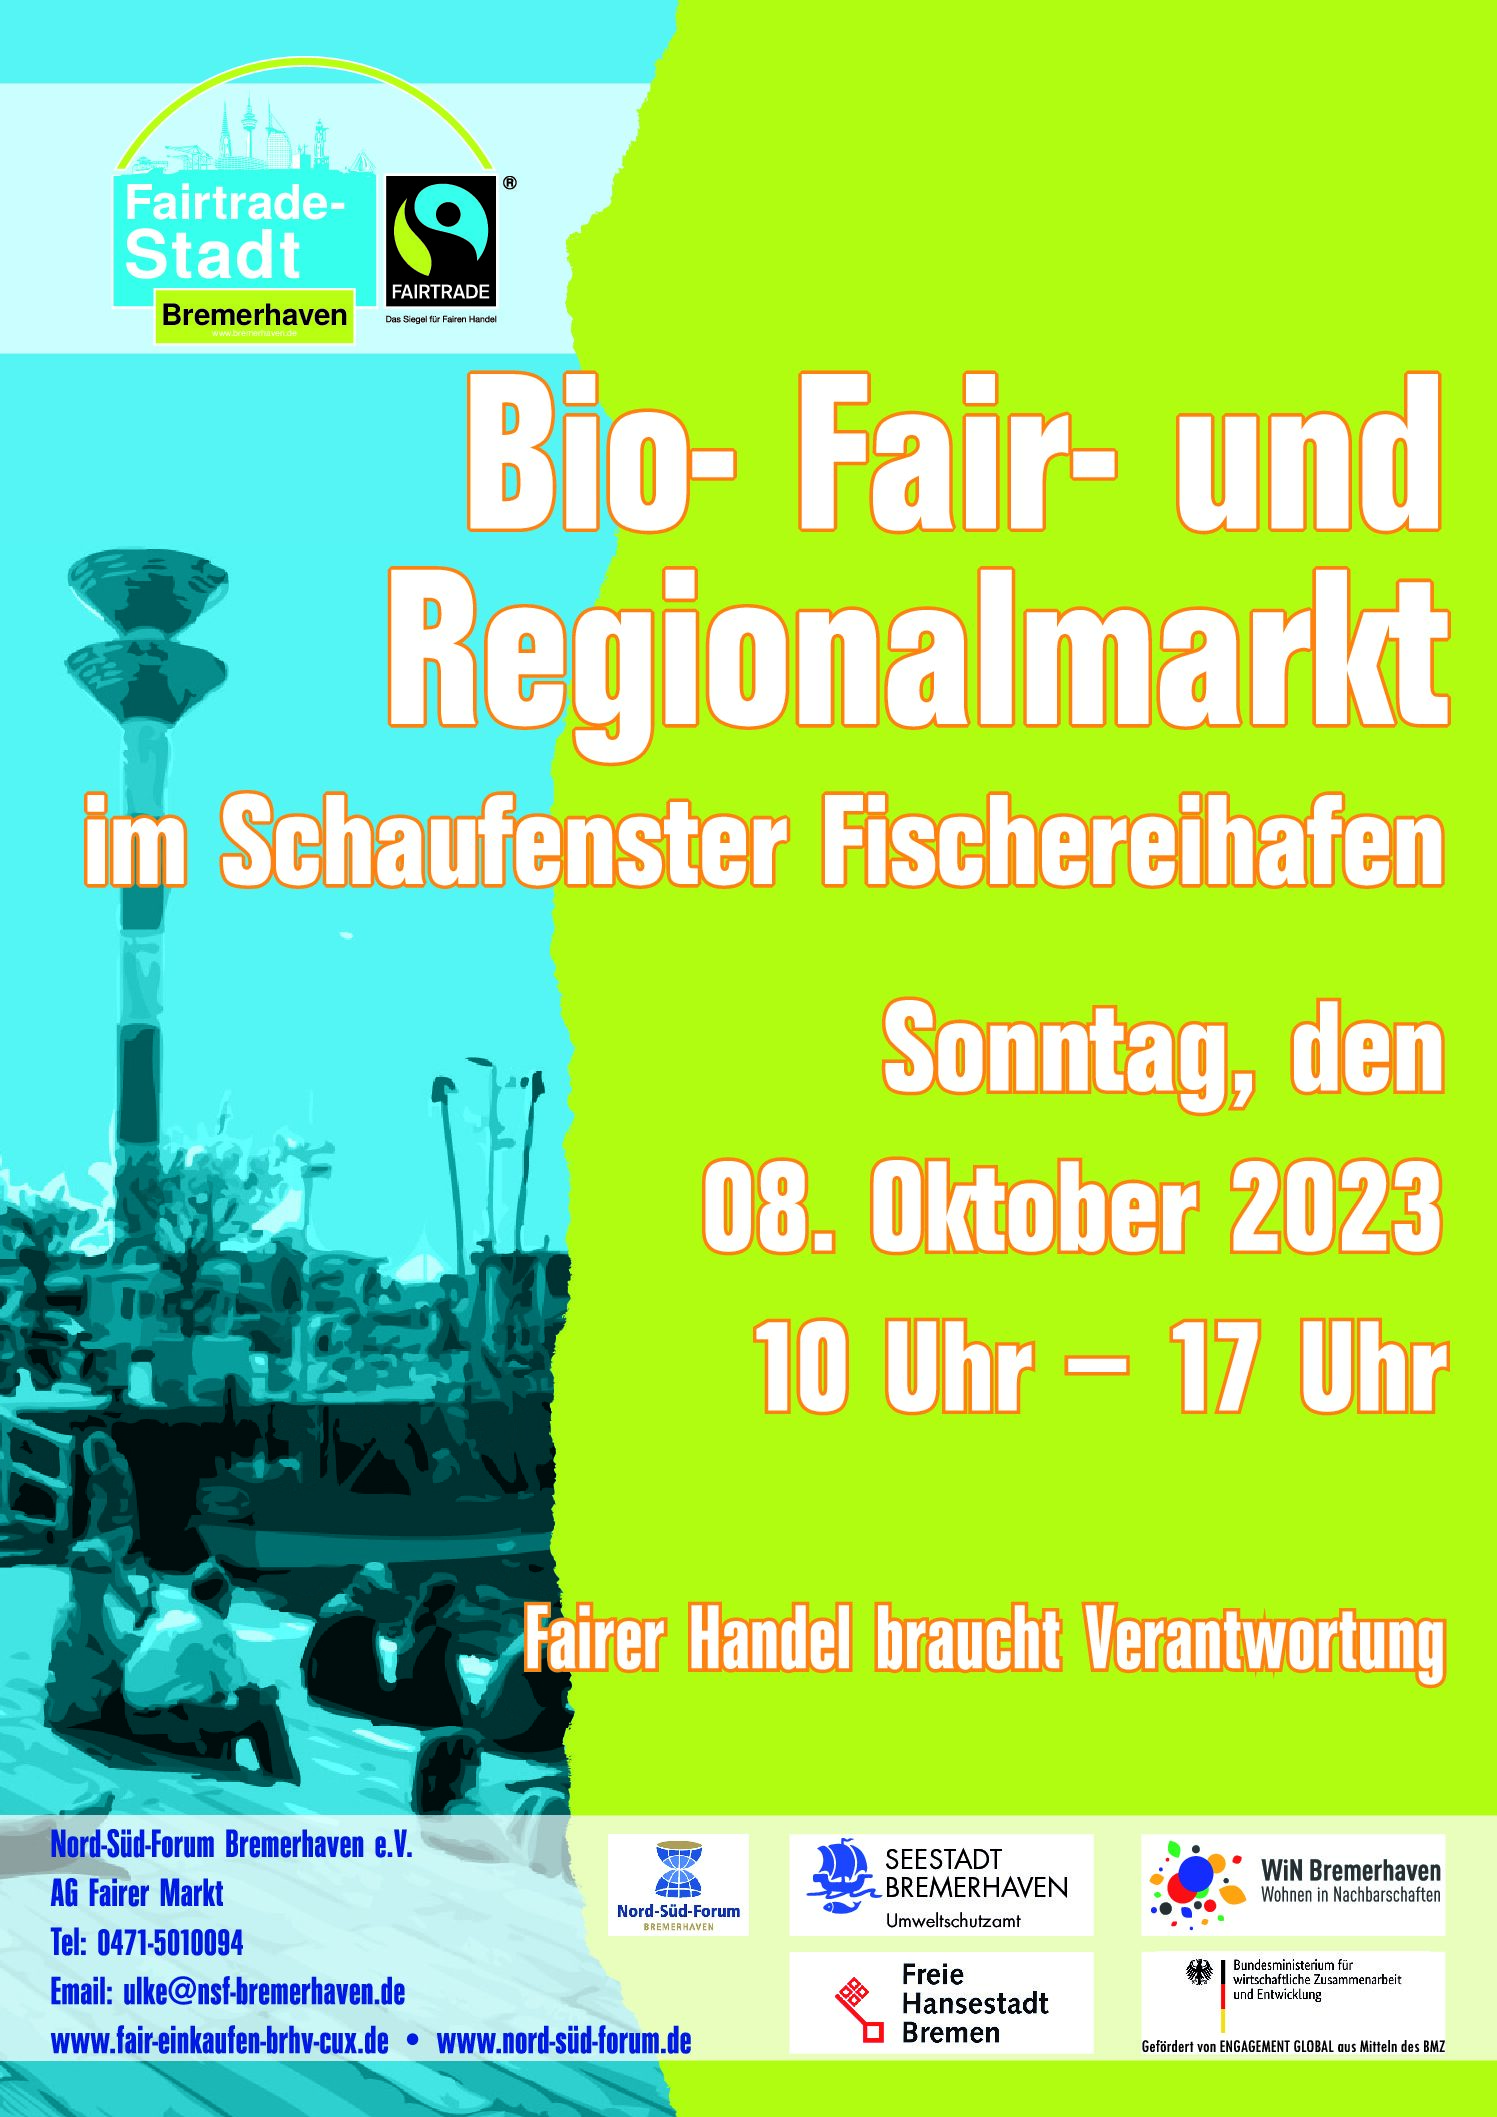 Bio- Fair- und Regionalmarkt am 08.10.2023